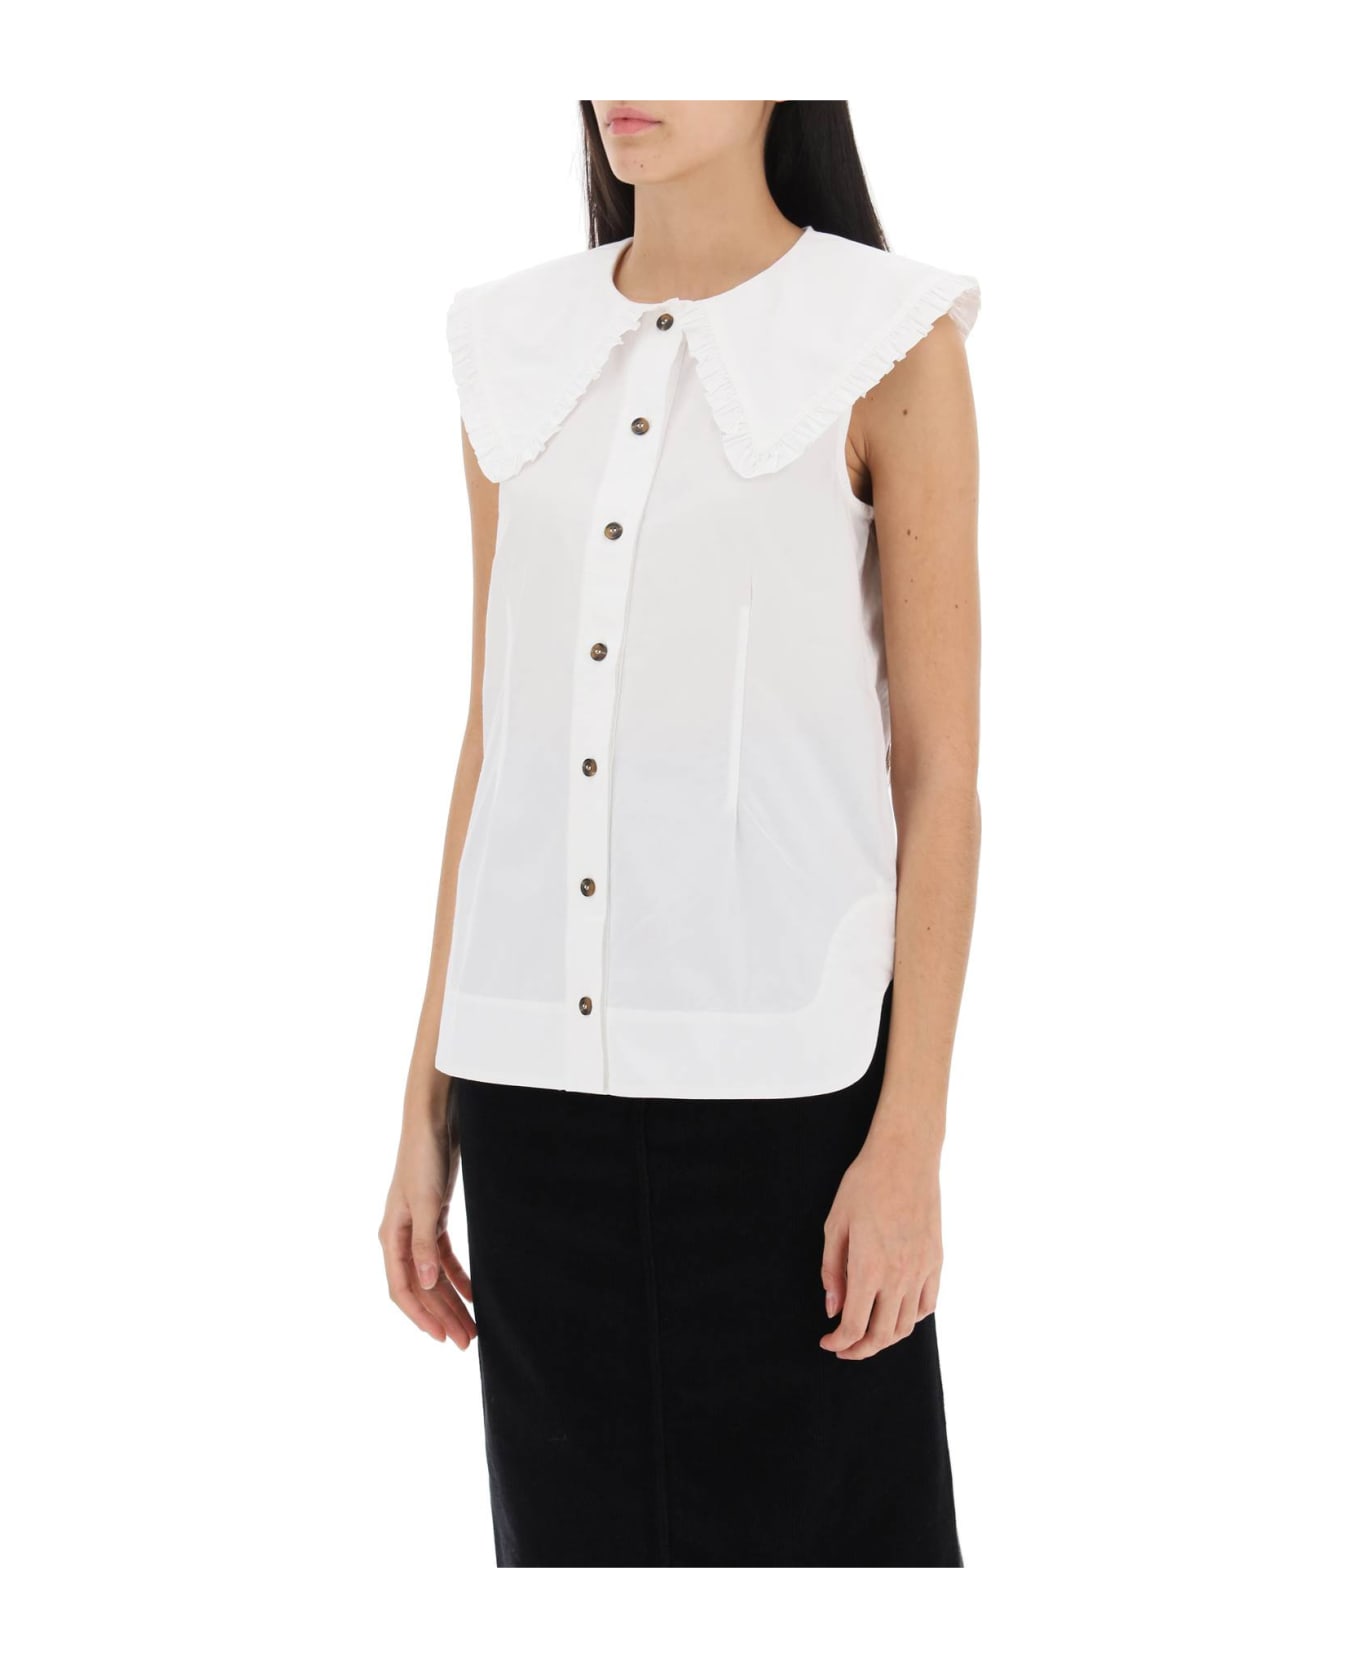 Ganni Cotton Sleeveless Shirt - White シャツ